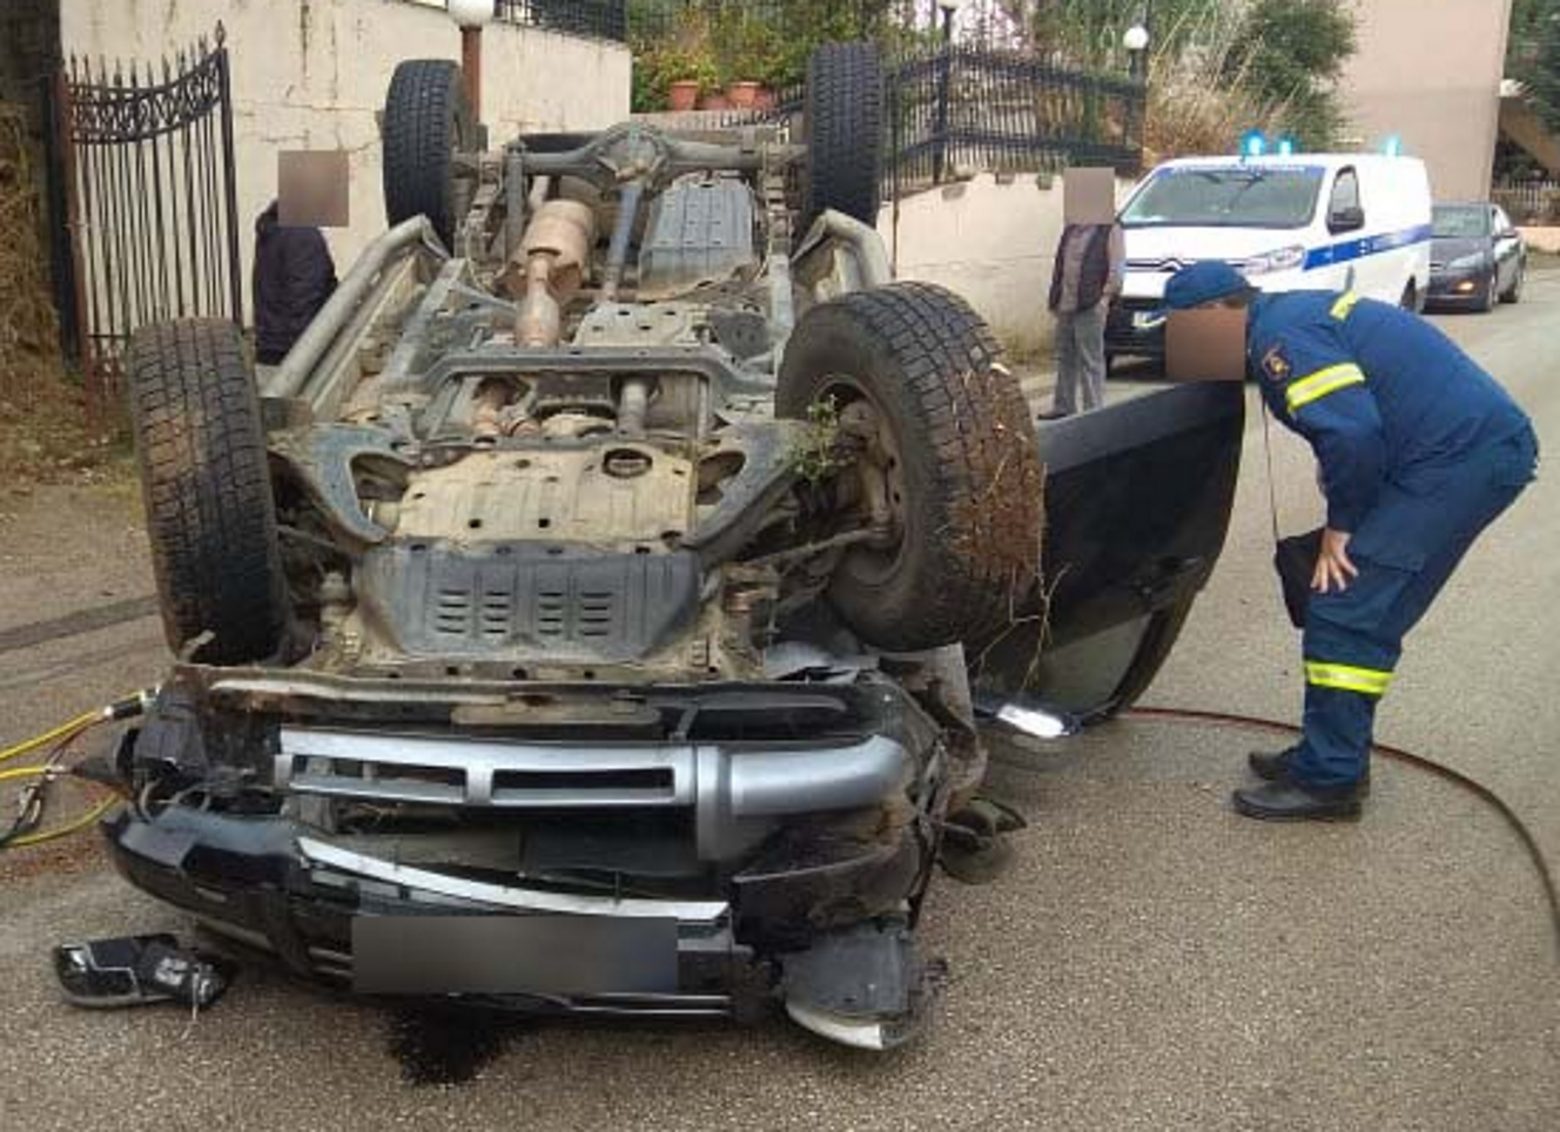 Τροχαίο - Σοκαριστικό ατύχημα στην Αβόρανη Αιτωλοακαρνανίας - Τούμπαρε αγροτικό, τραυματίστηκε σοβαρά γυναίκα